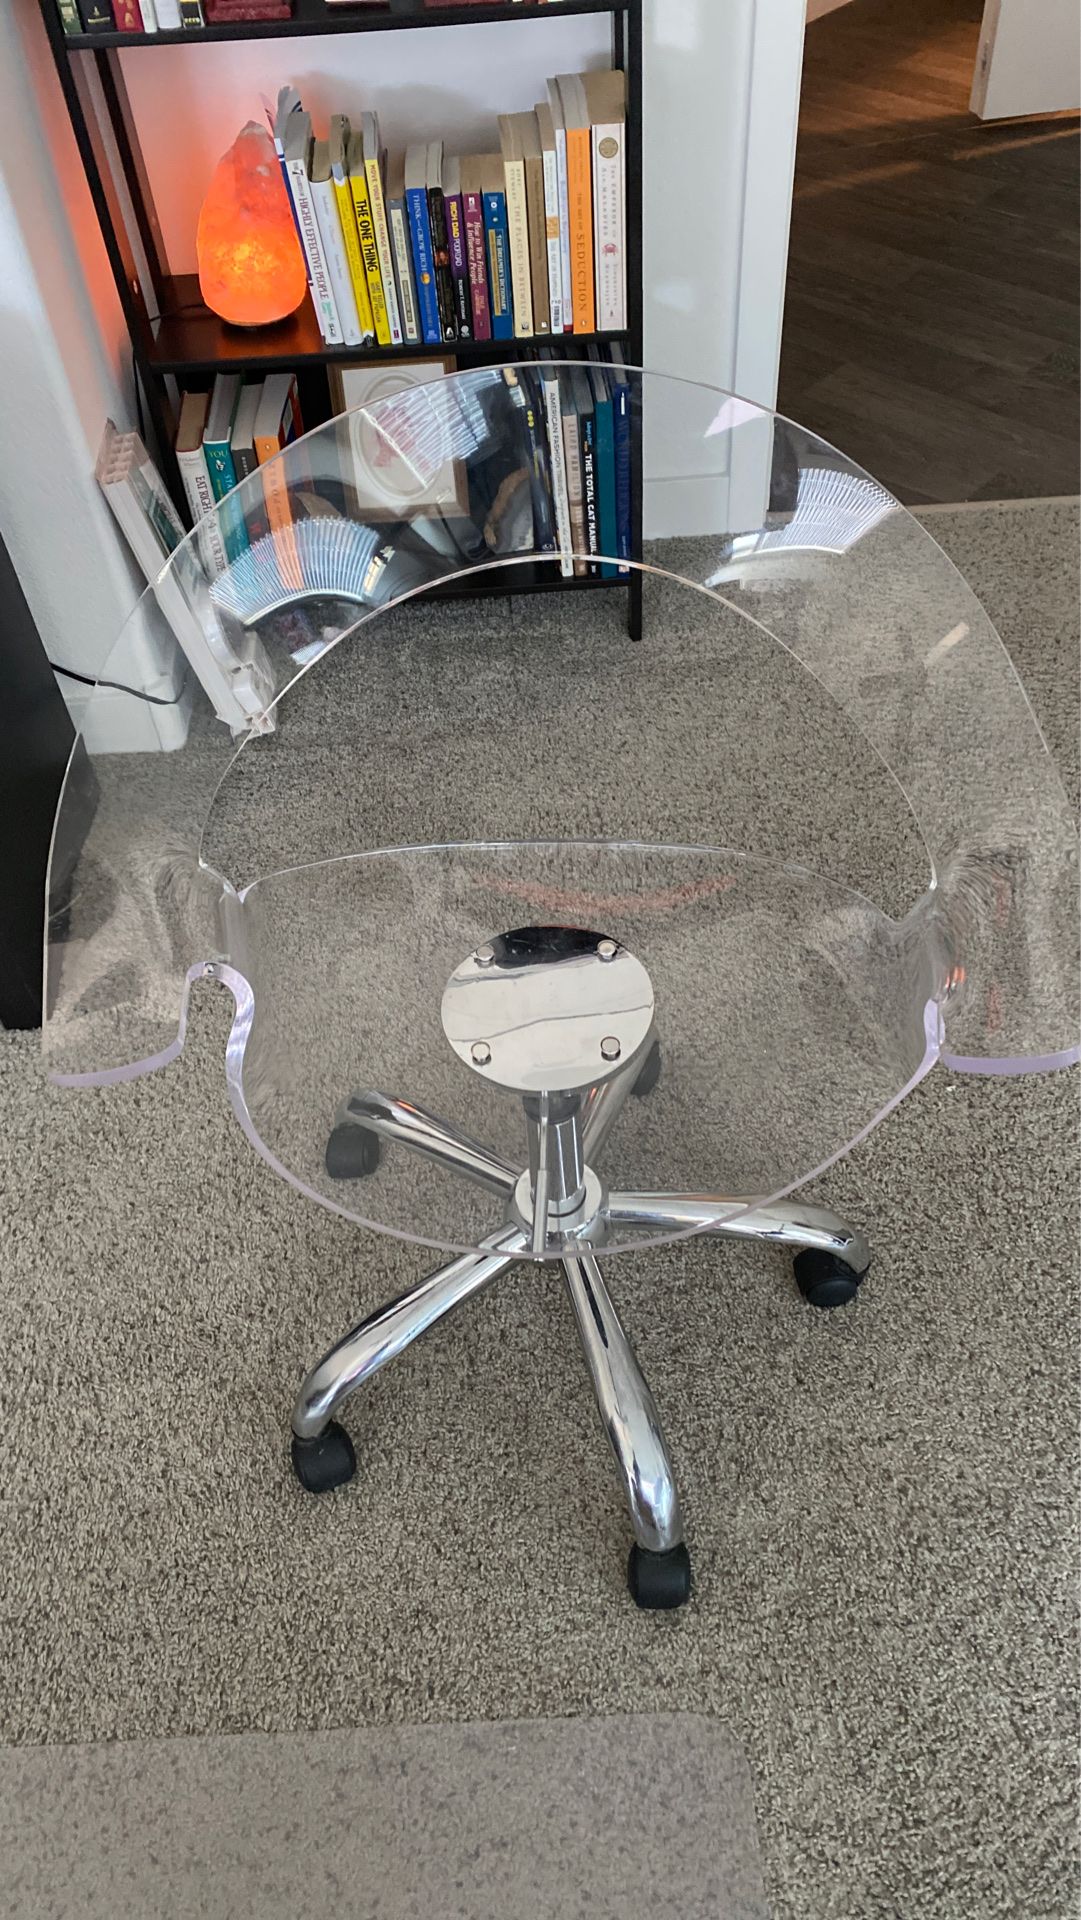 acrylic office chair desk chair